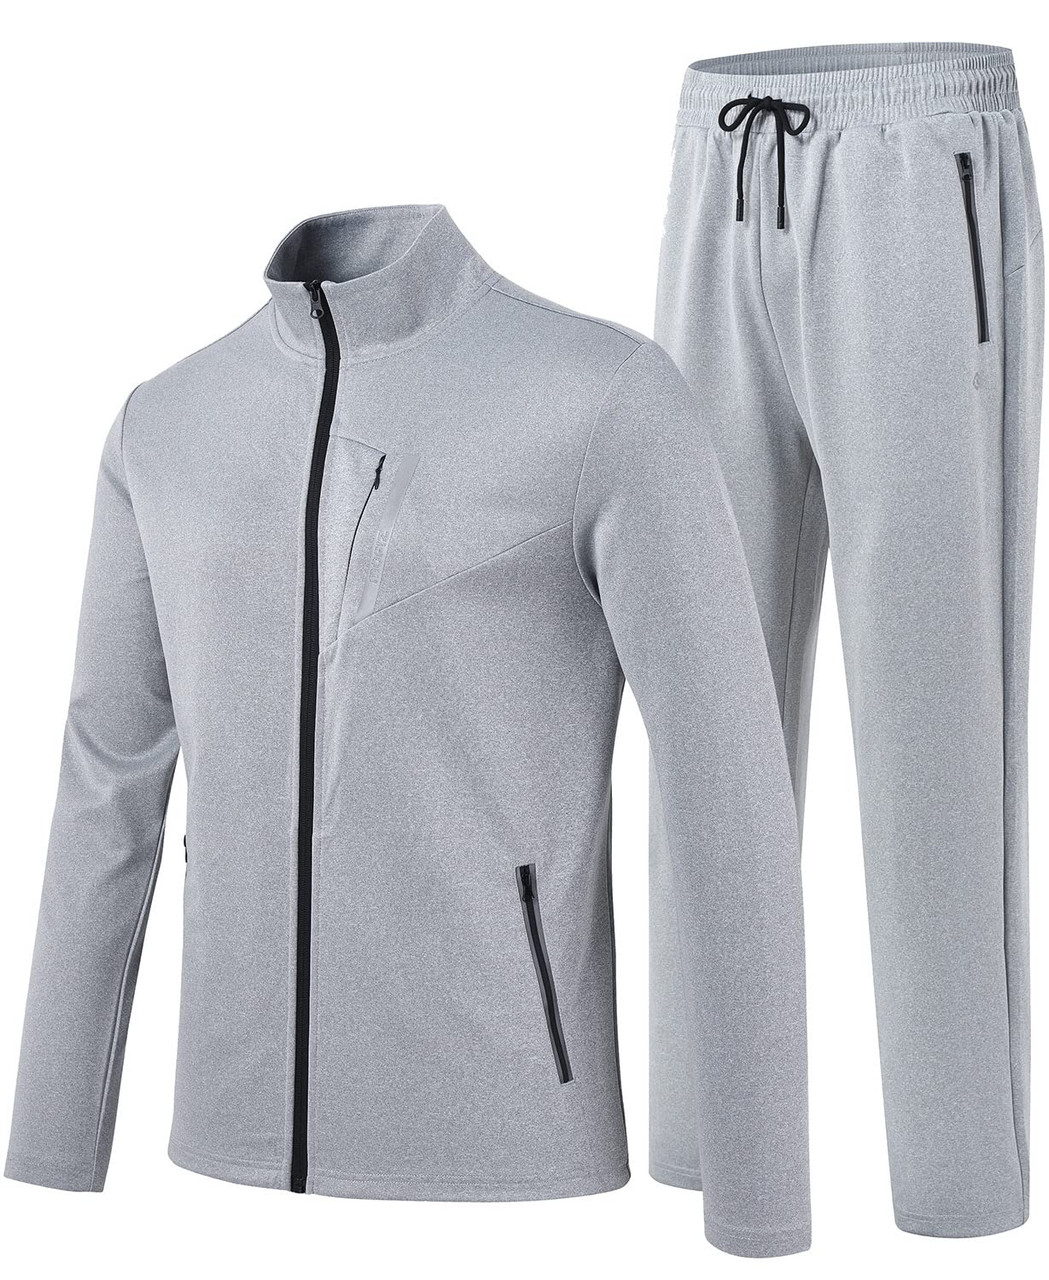 MoFiz Men's Tracksuits,Full Zip Sweat Suits For men,Solid Jogger Sets ...